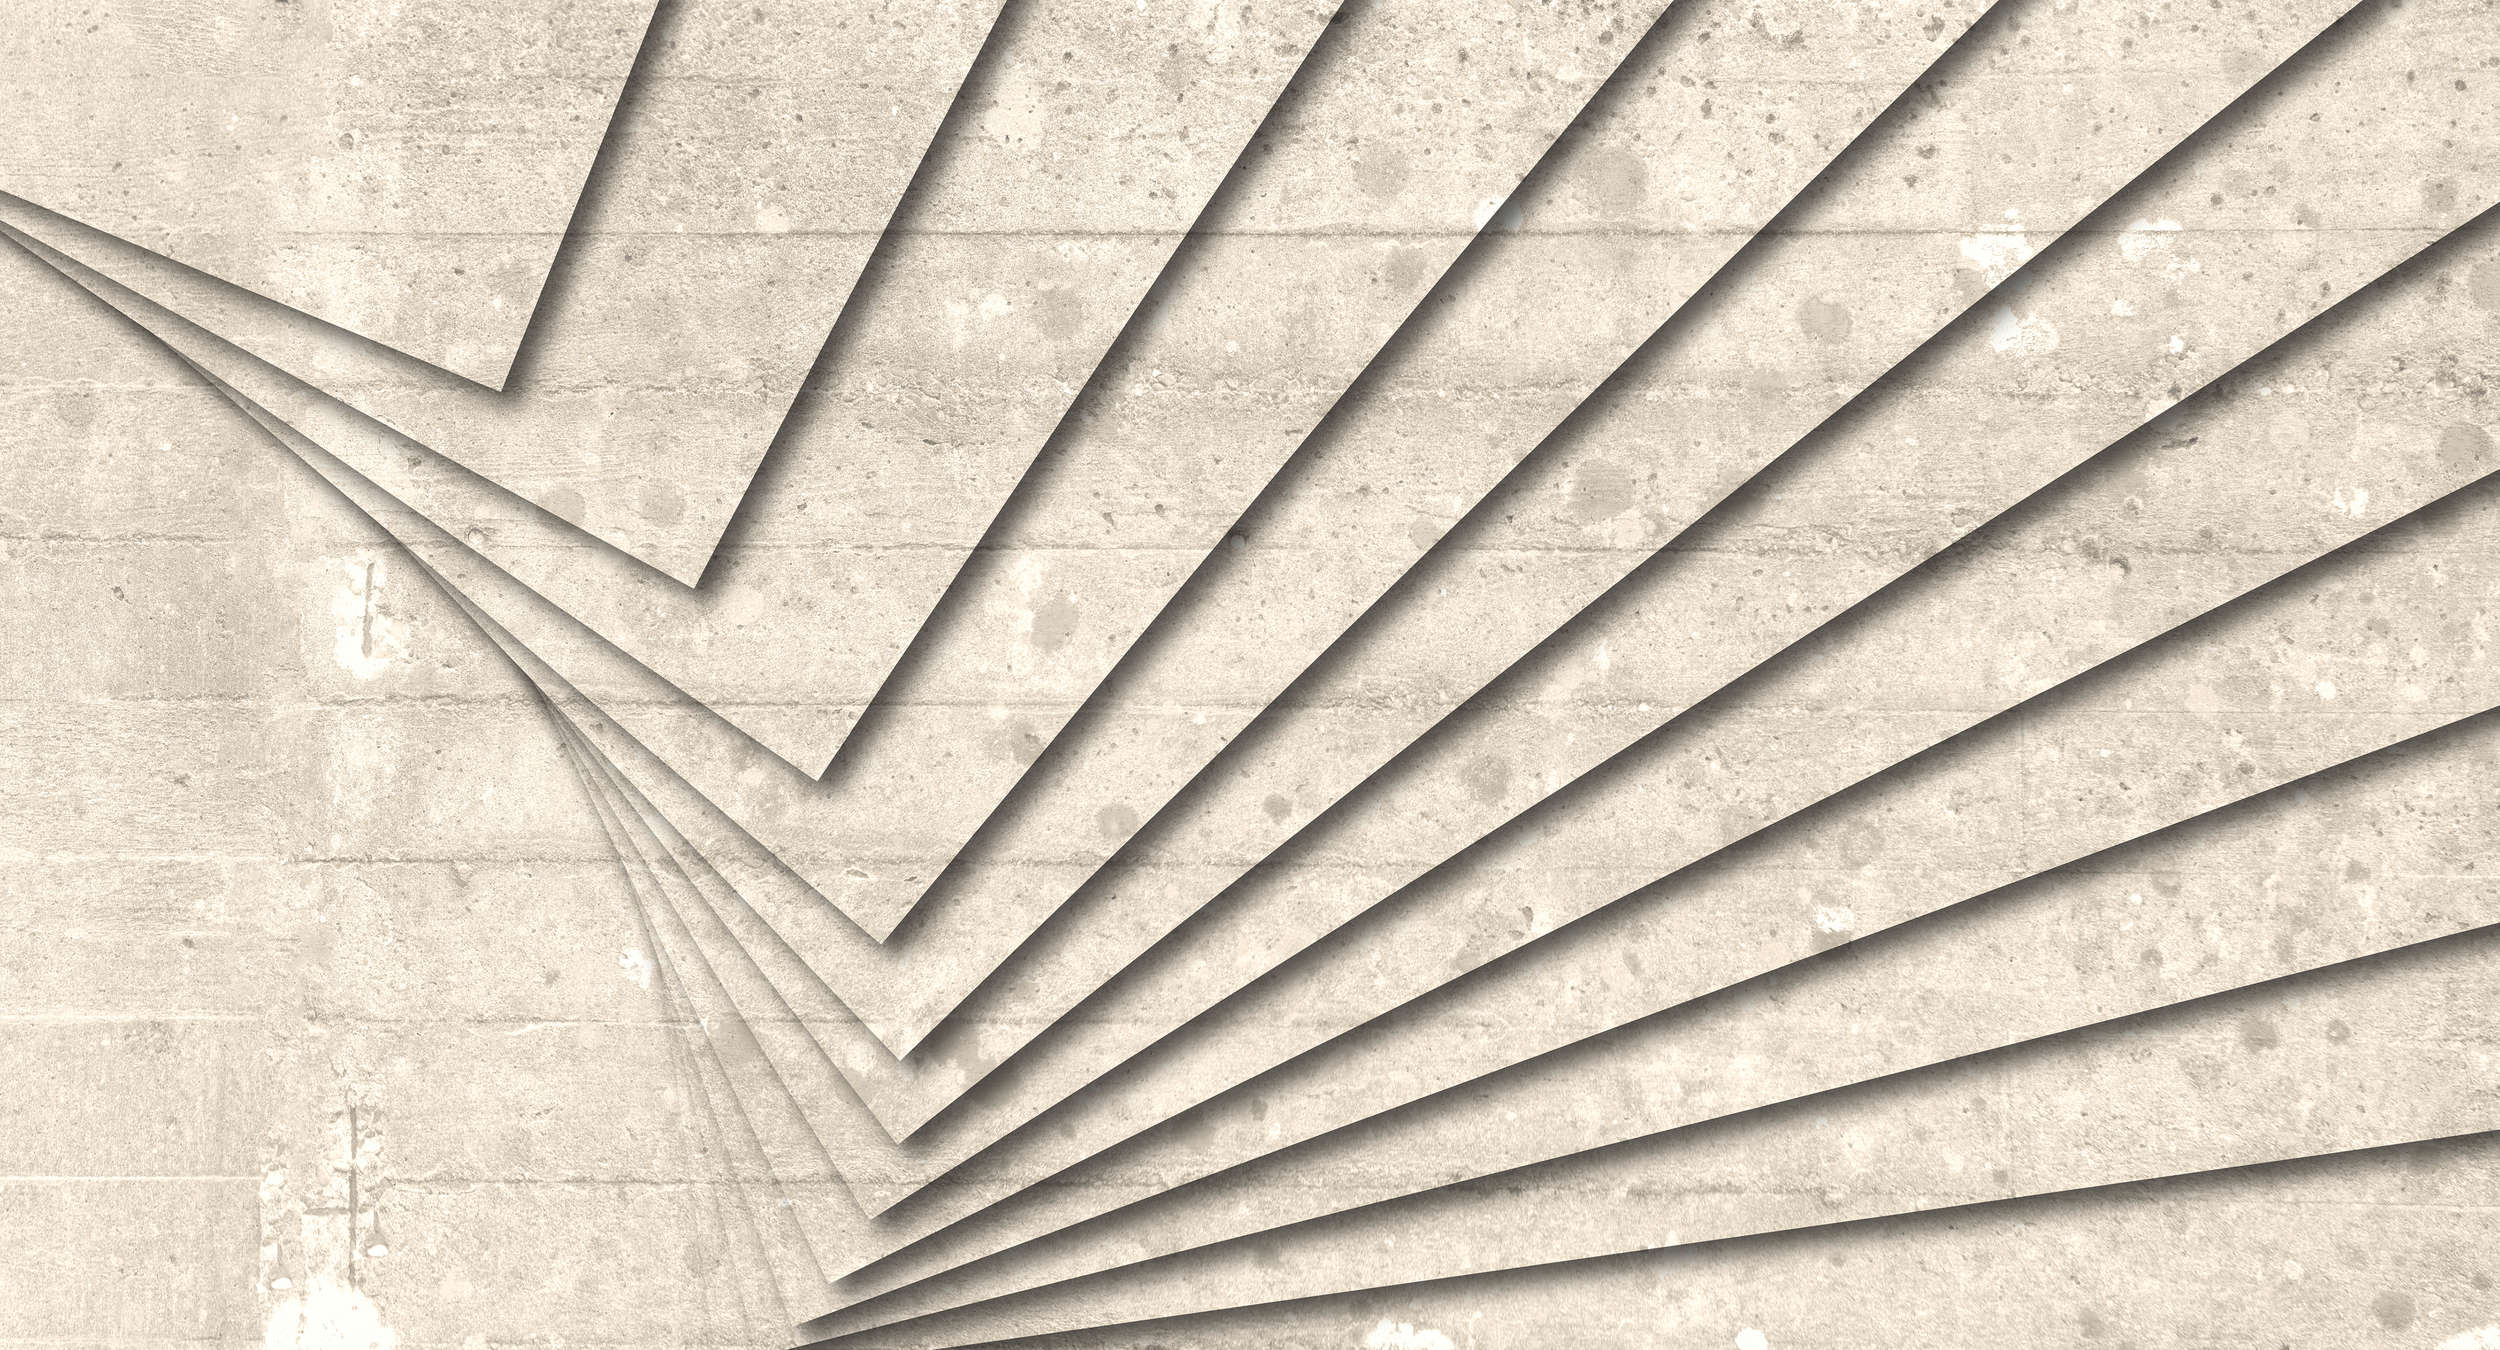             Carta da parati in cemento con design grafico rustico - Beige, bianco
        